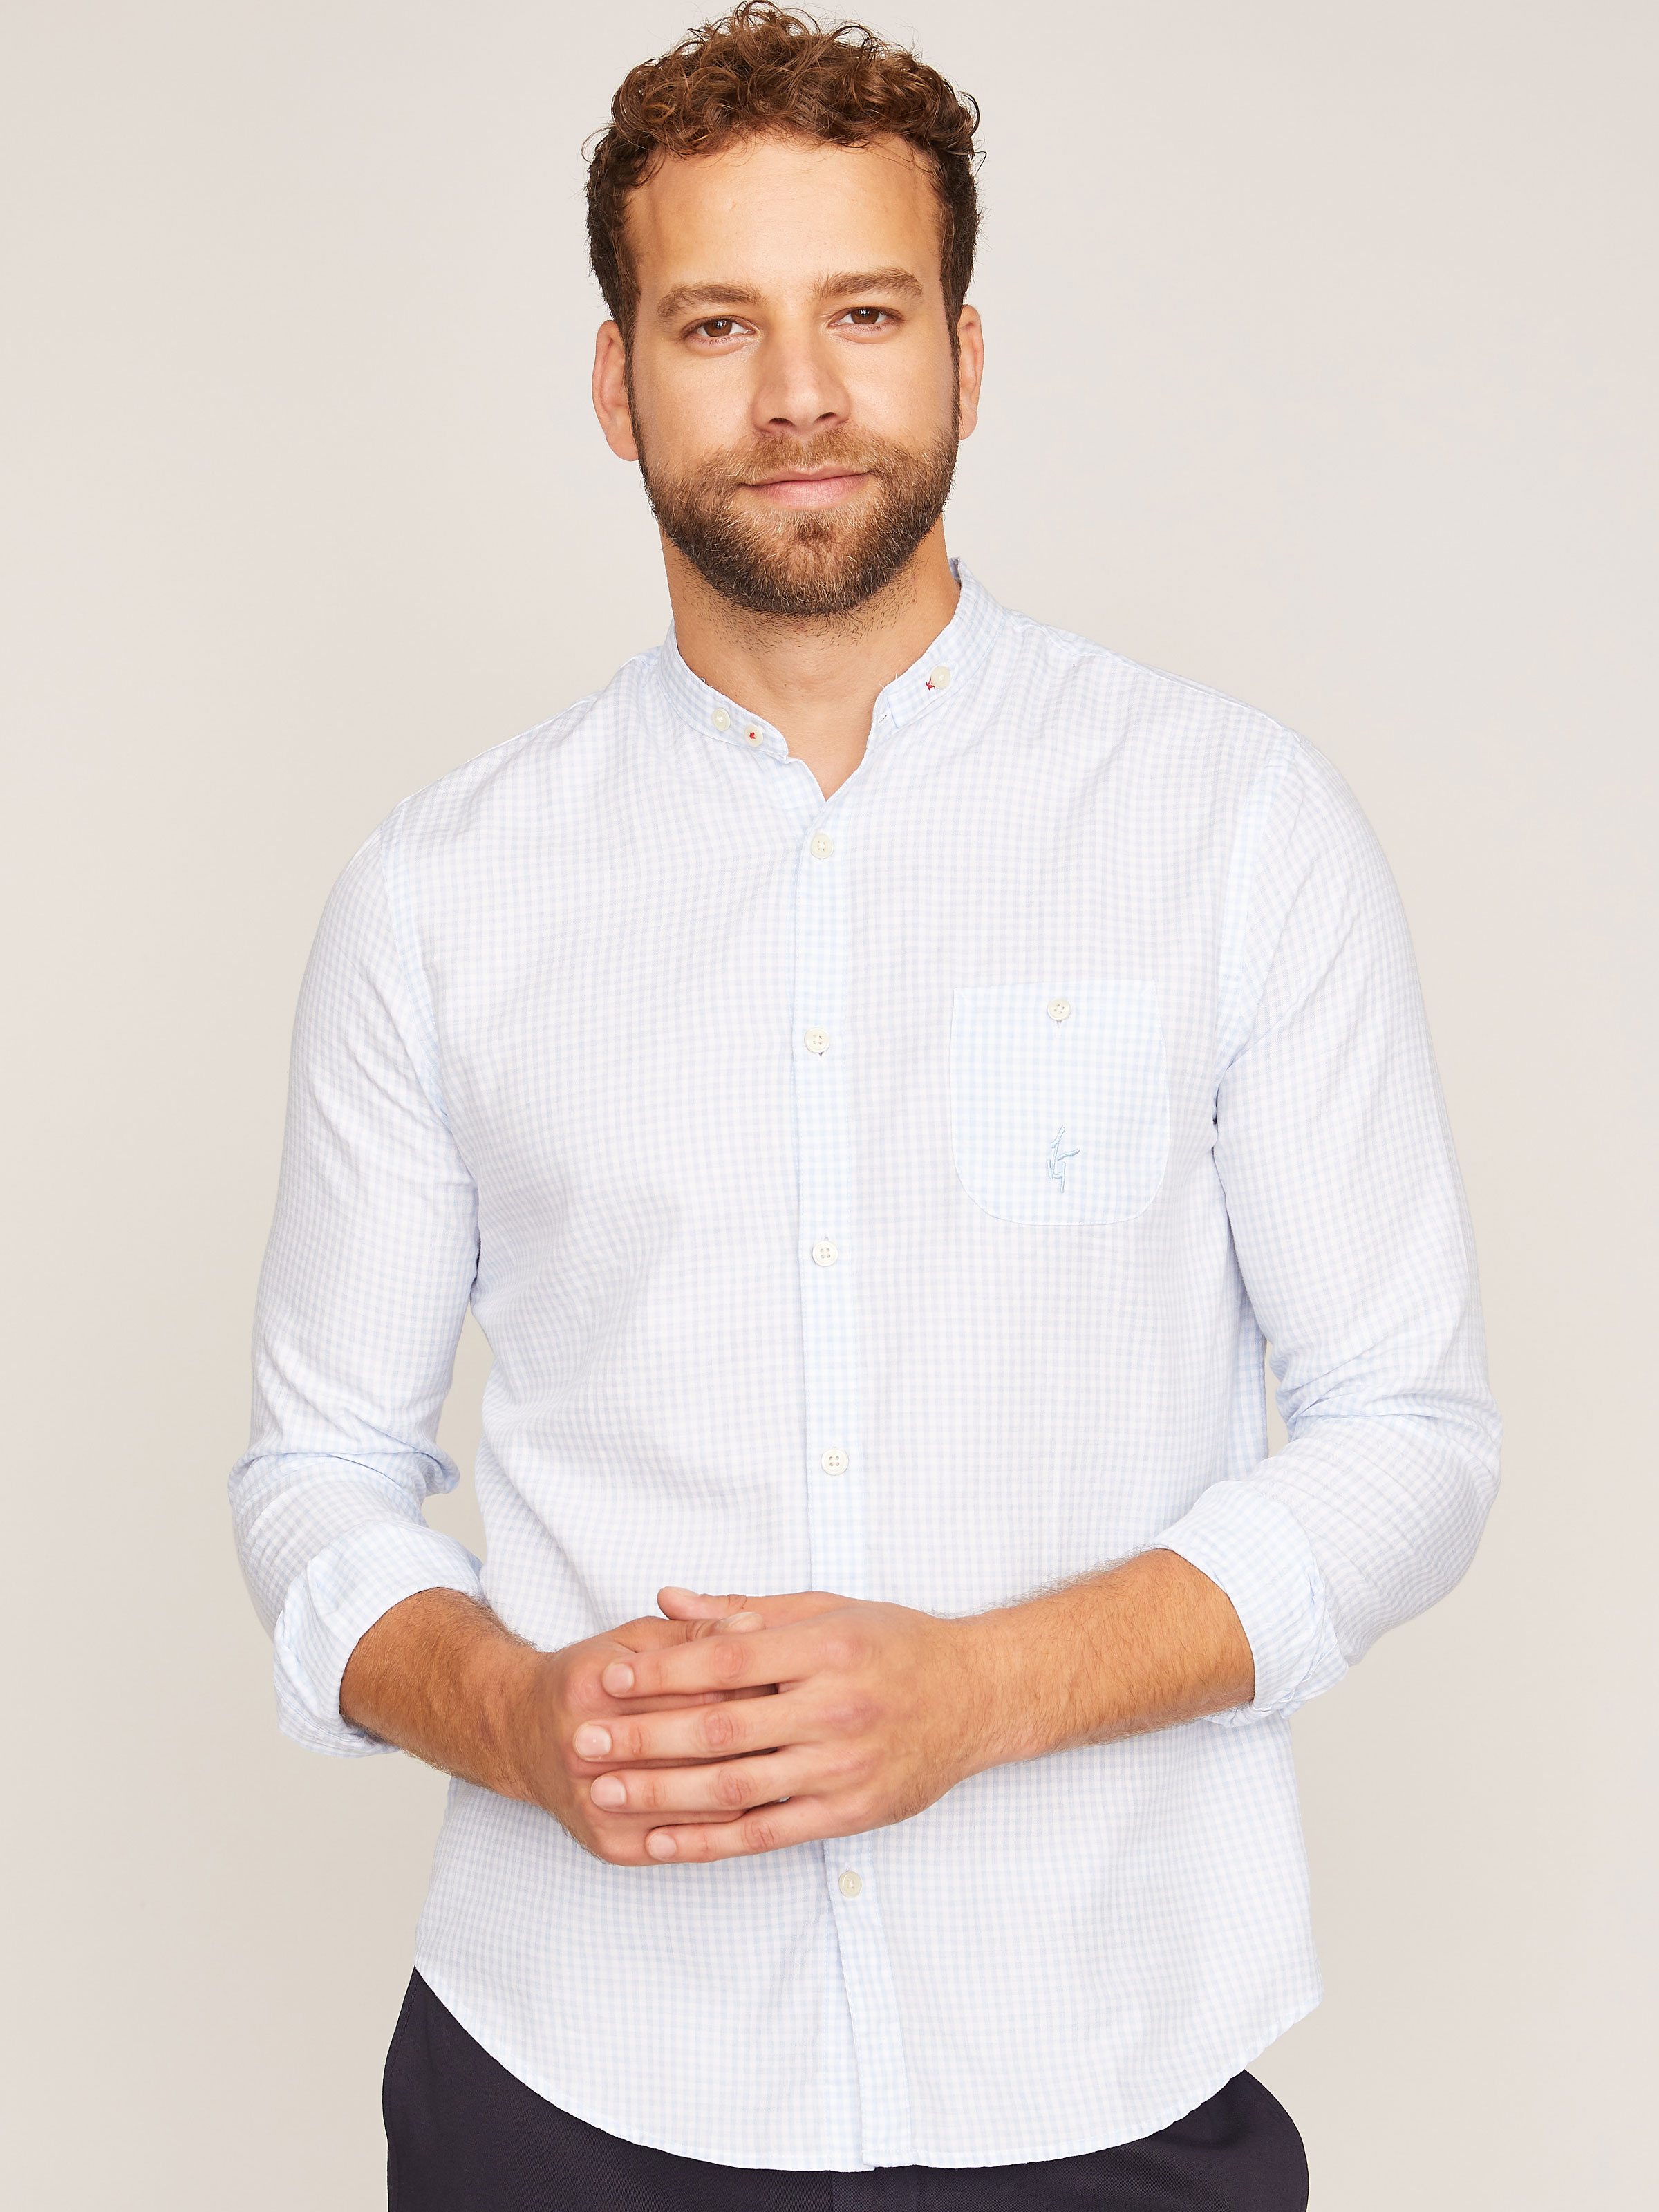 Langarmhemd mit Knopfleiste weiß dressforfun 900602 Herren Trachtenhemd S | Nr. 302995 Diverse Größen - Knöpfe in Hirschhorn-Optik